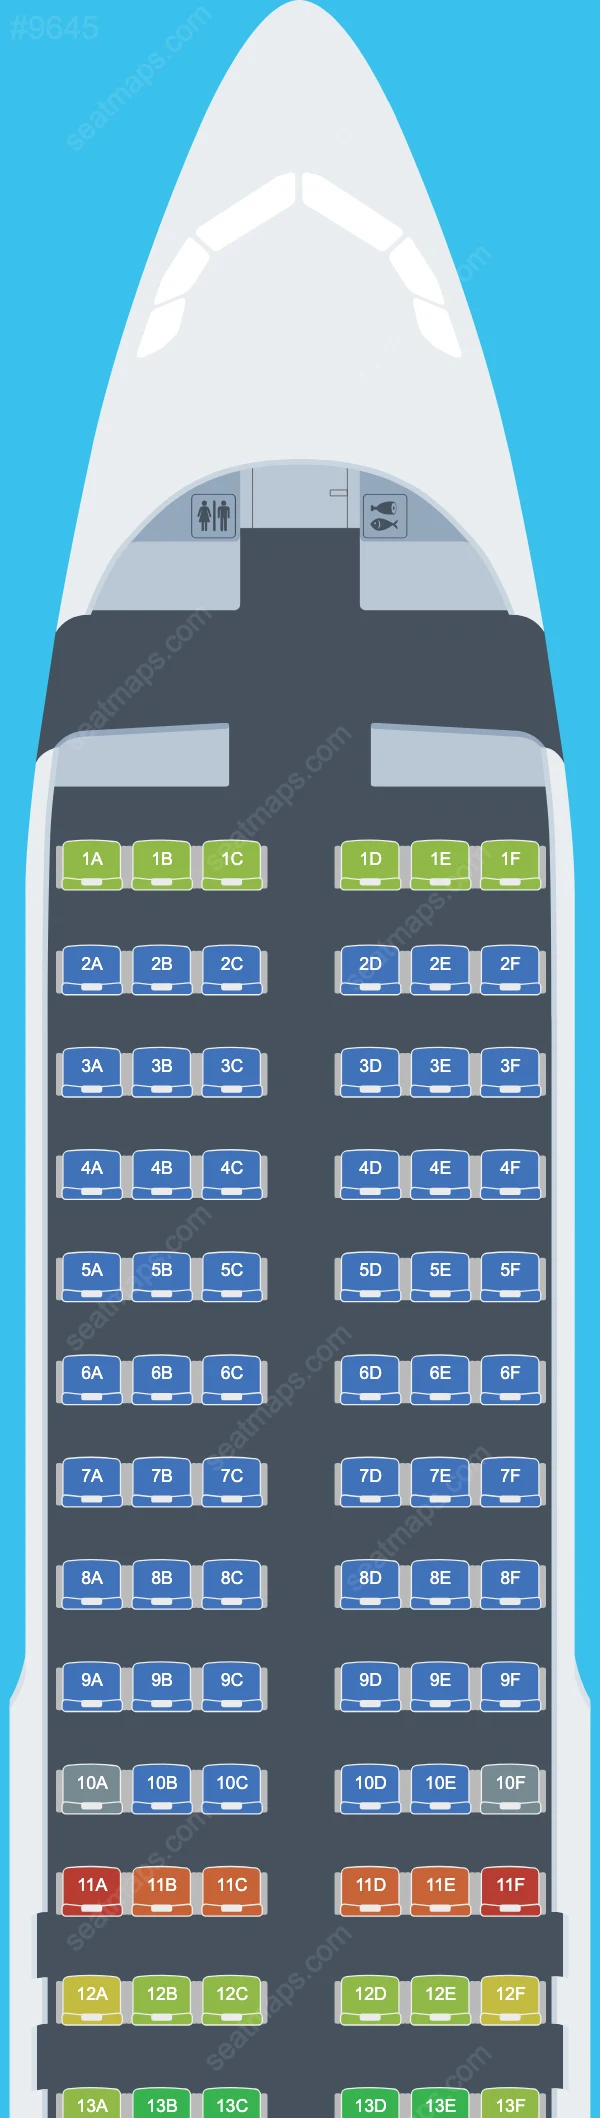 Ryanair Airbus A320 Seat Maps A320-200